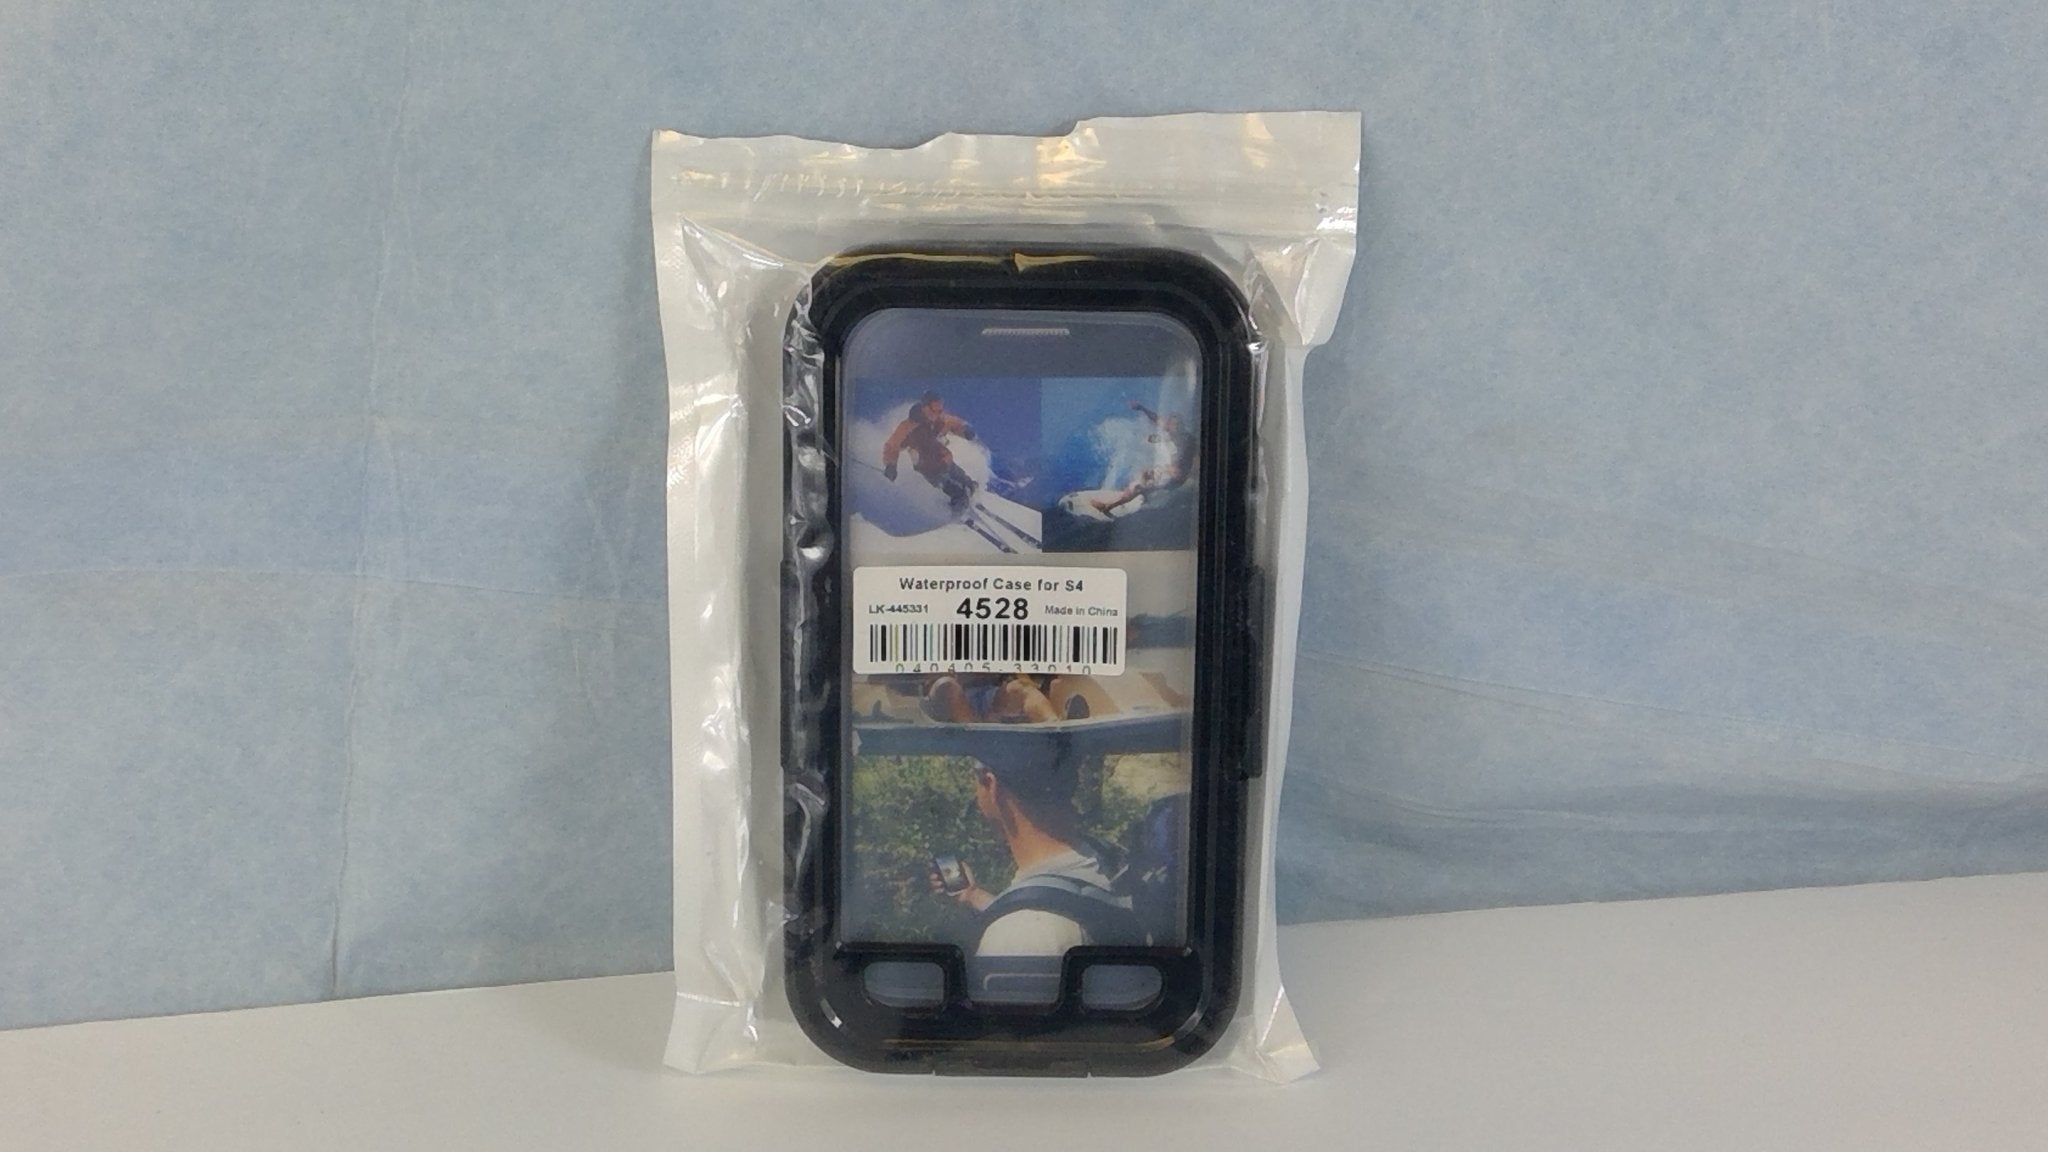 Waterproof Cellphone Case For S4 - Bargainwizz